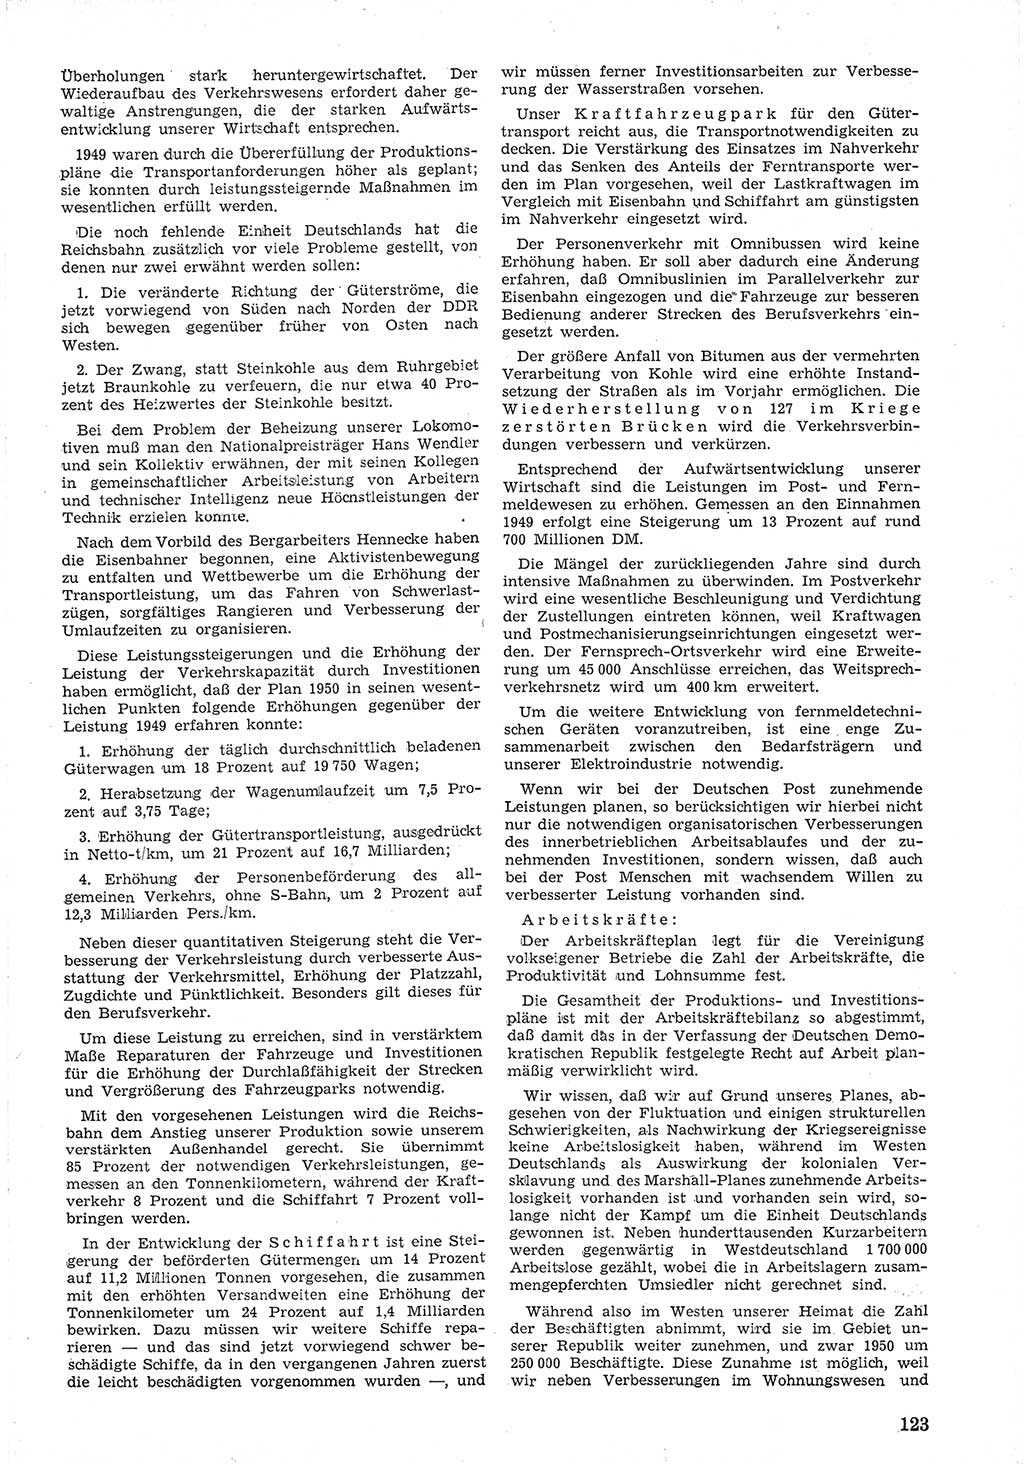 Provisorische Volkskammer (VK) der Deutschen Demokratischen Republik (DDR) 1949-1950, Dokument 135 (Prov. VK DDR 1949-1950, Dok. 135)